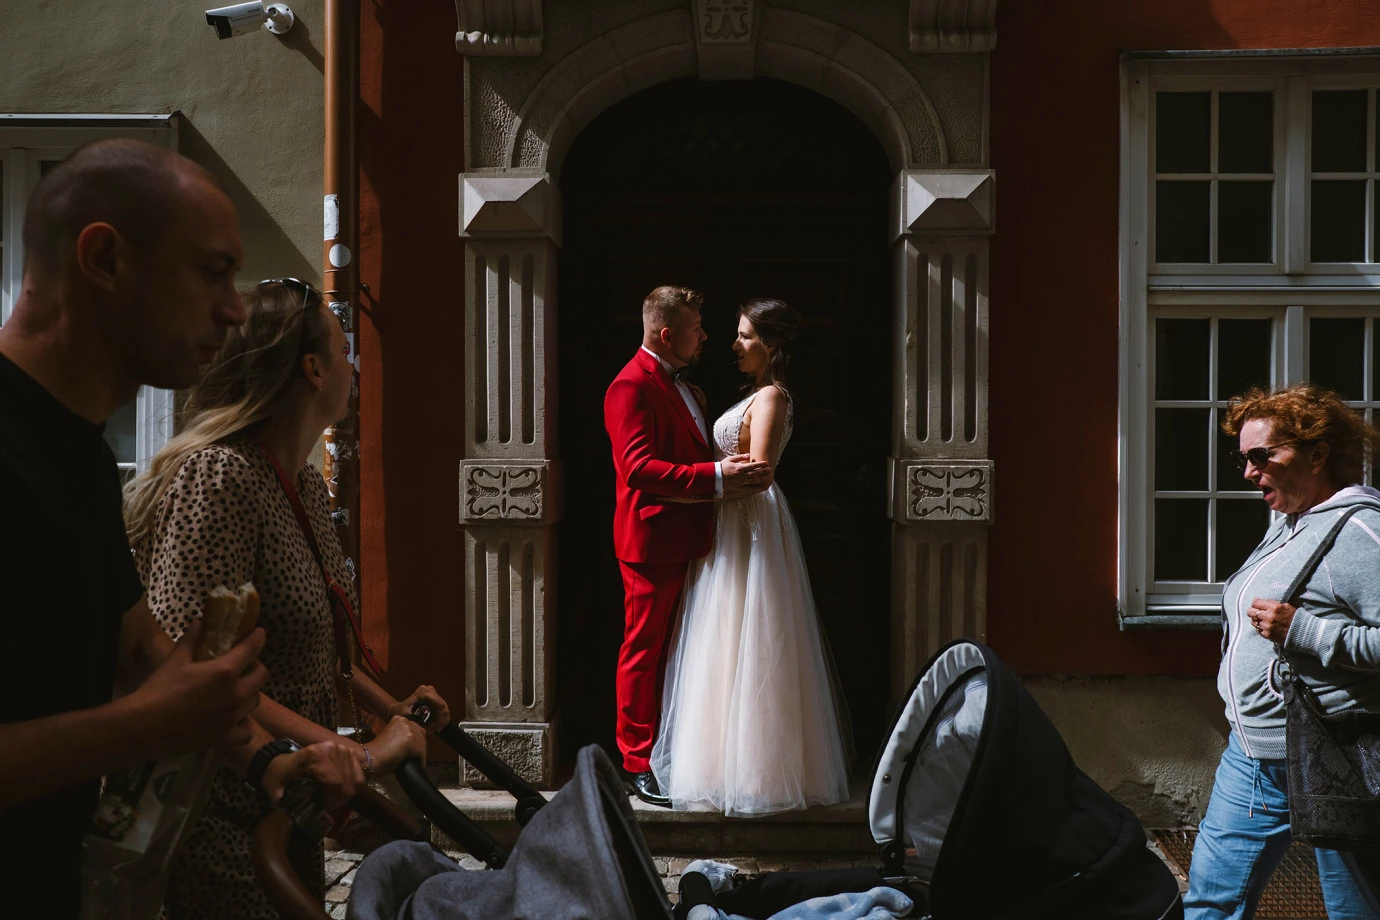 fotograf bialystok mateusz-rychlik-fotografia portfolio zdjecia slubne inspiracje wesele plener slubny sesja slubna